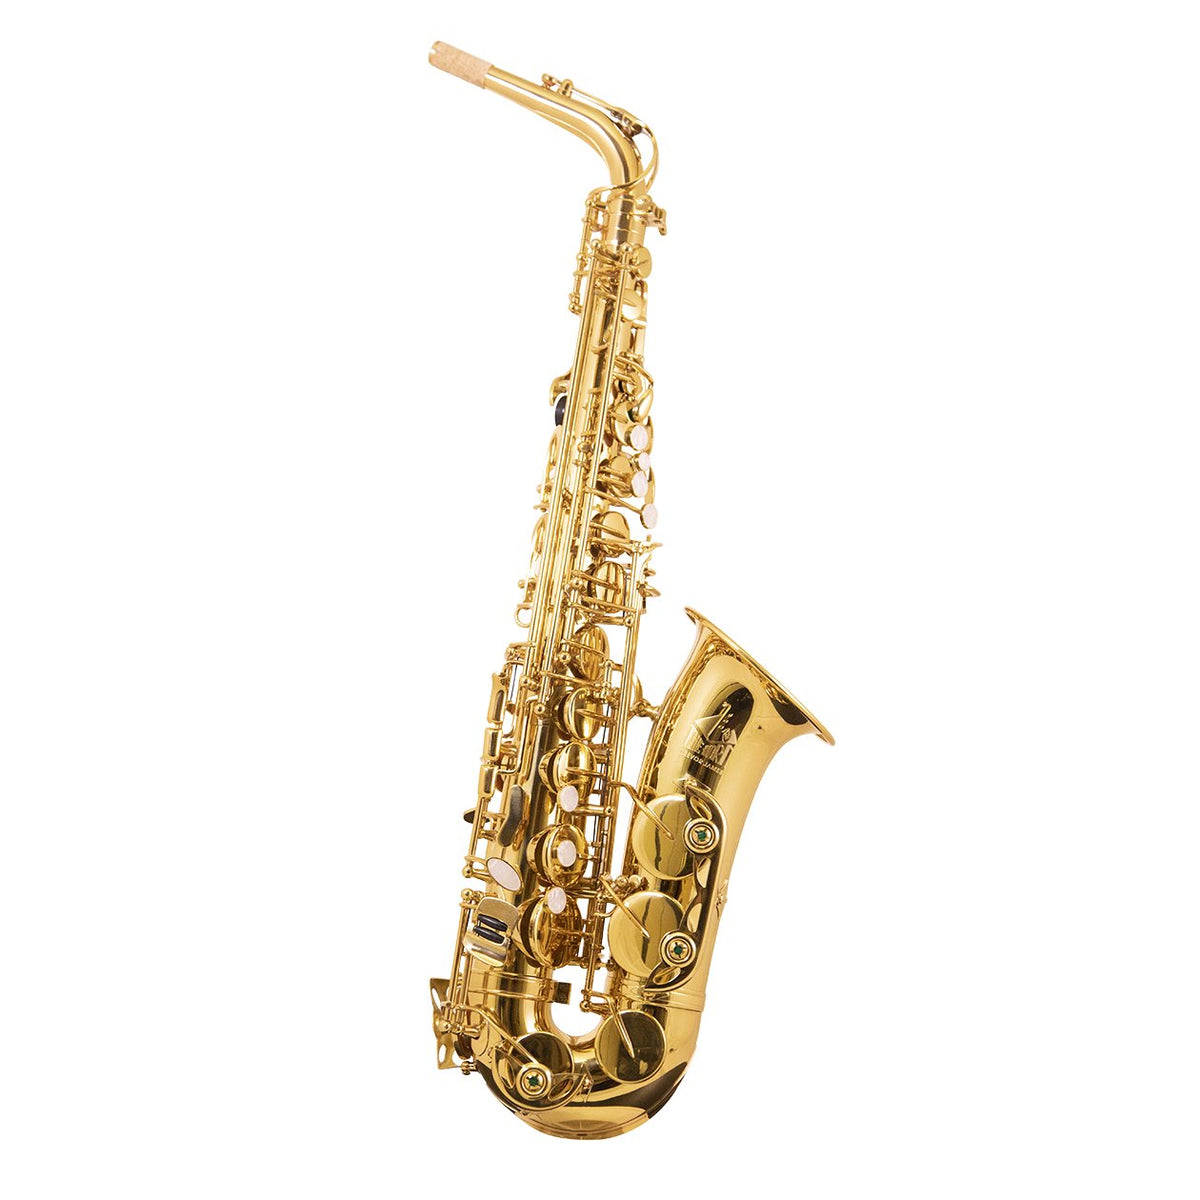 Trevor James - &quot;The Horn&quot; Alto Saxophone-Saxophone-Trevor James-Music Elements